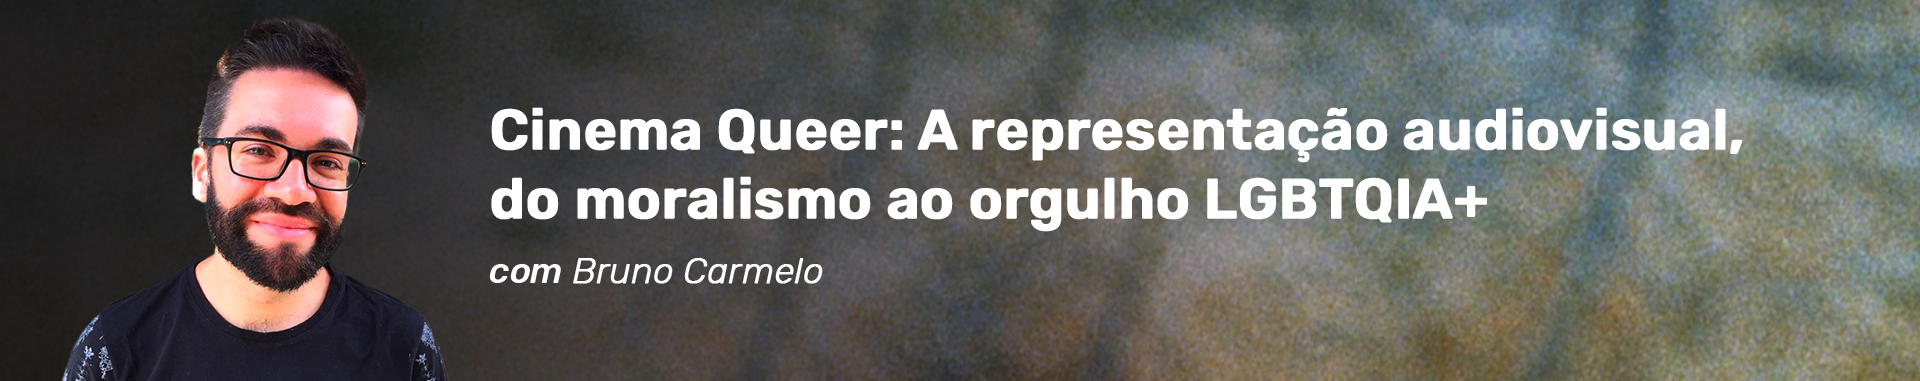 Cabeçalho do curso Cinema Queer: A representação audiovisual, do moralismo ao orgulho LGBTQIA+ com Bruno Carmelo